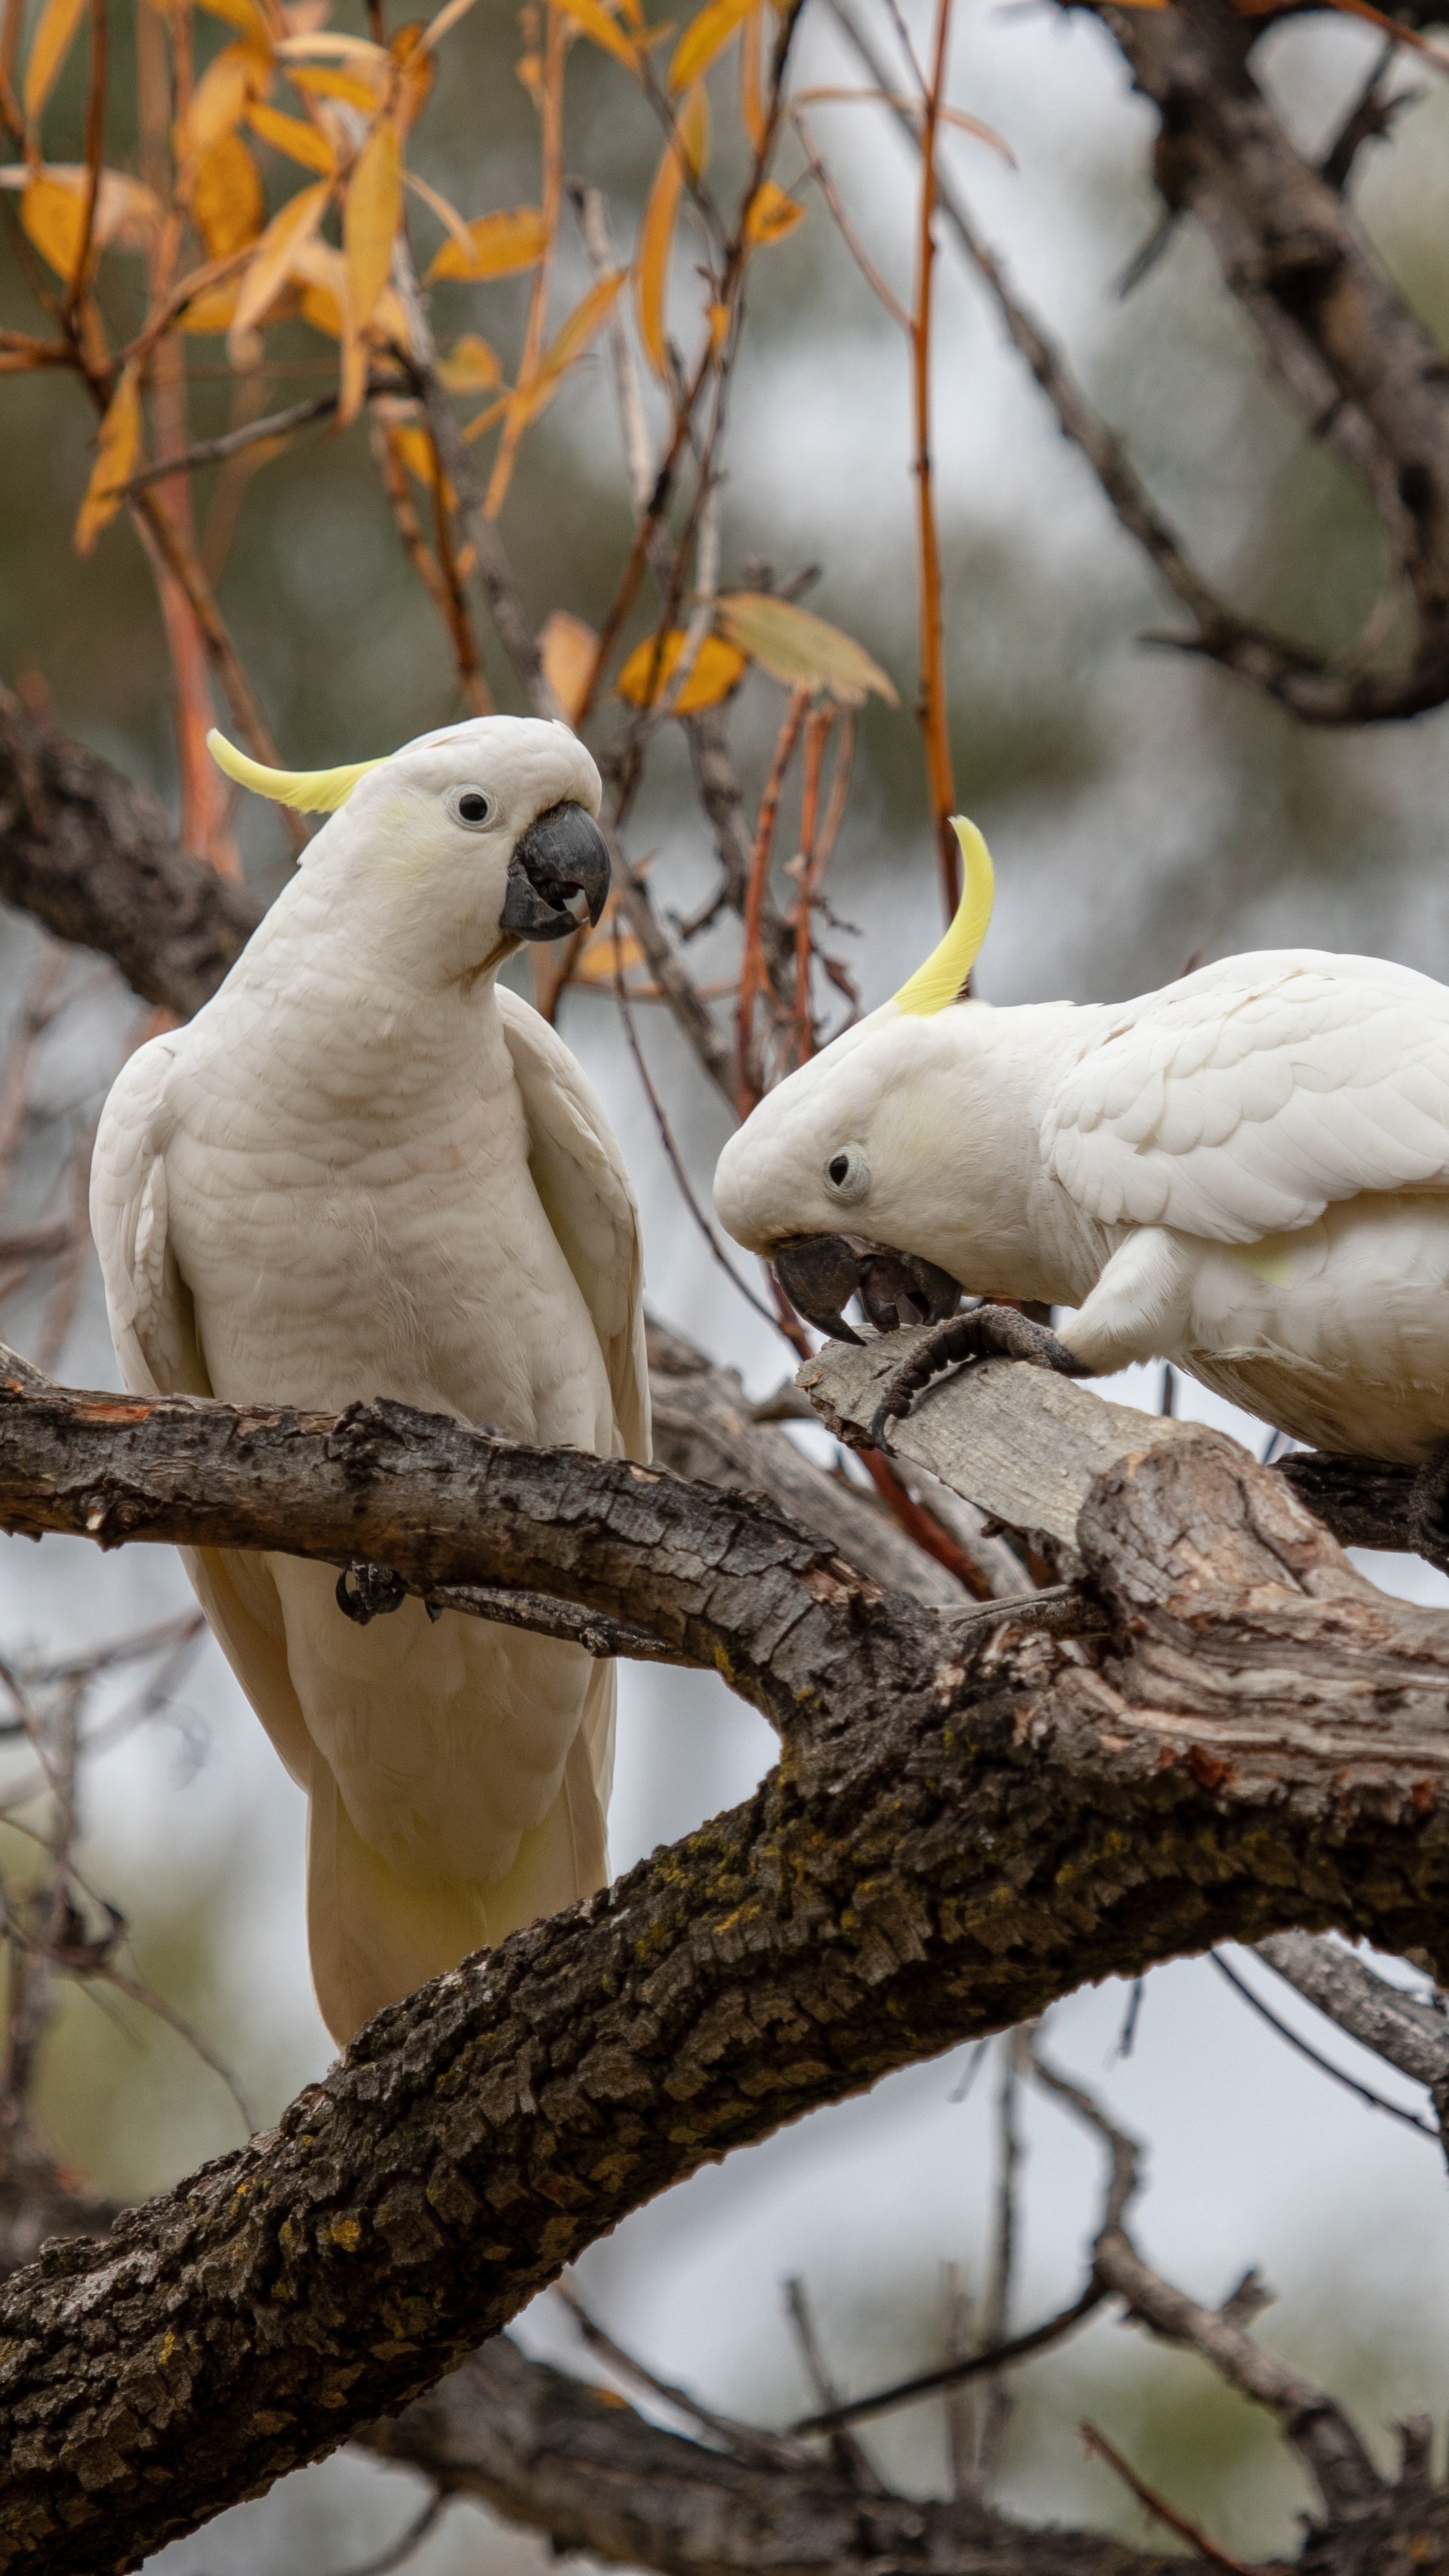 Cockatoo: The Australian Continent Is The Habitat Of Cockatoo Parrots. 2160x3840 4K Wallpaper.